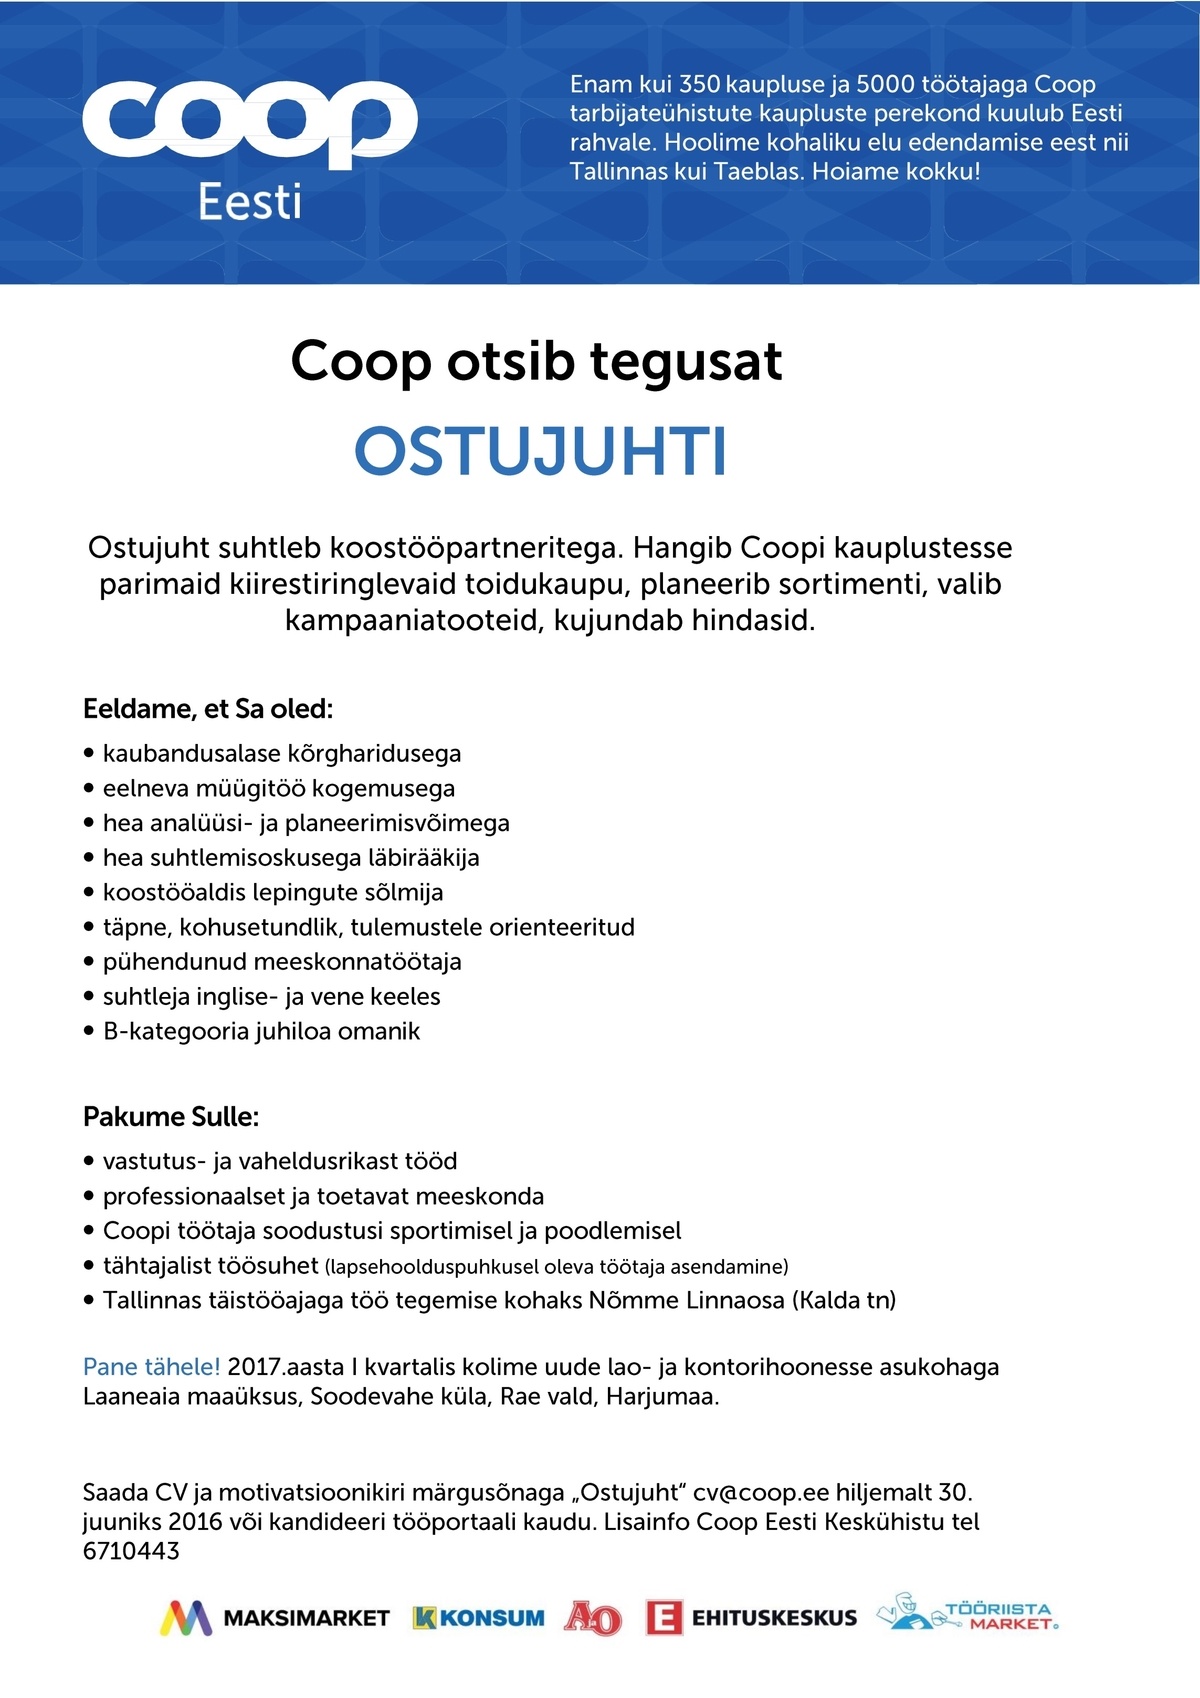 Coop Eesti Keskühistu Ostujuht